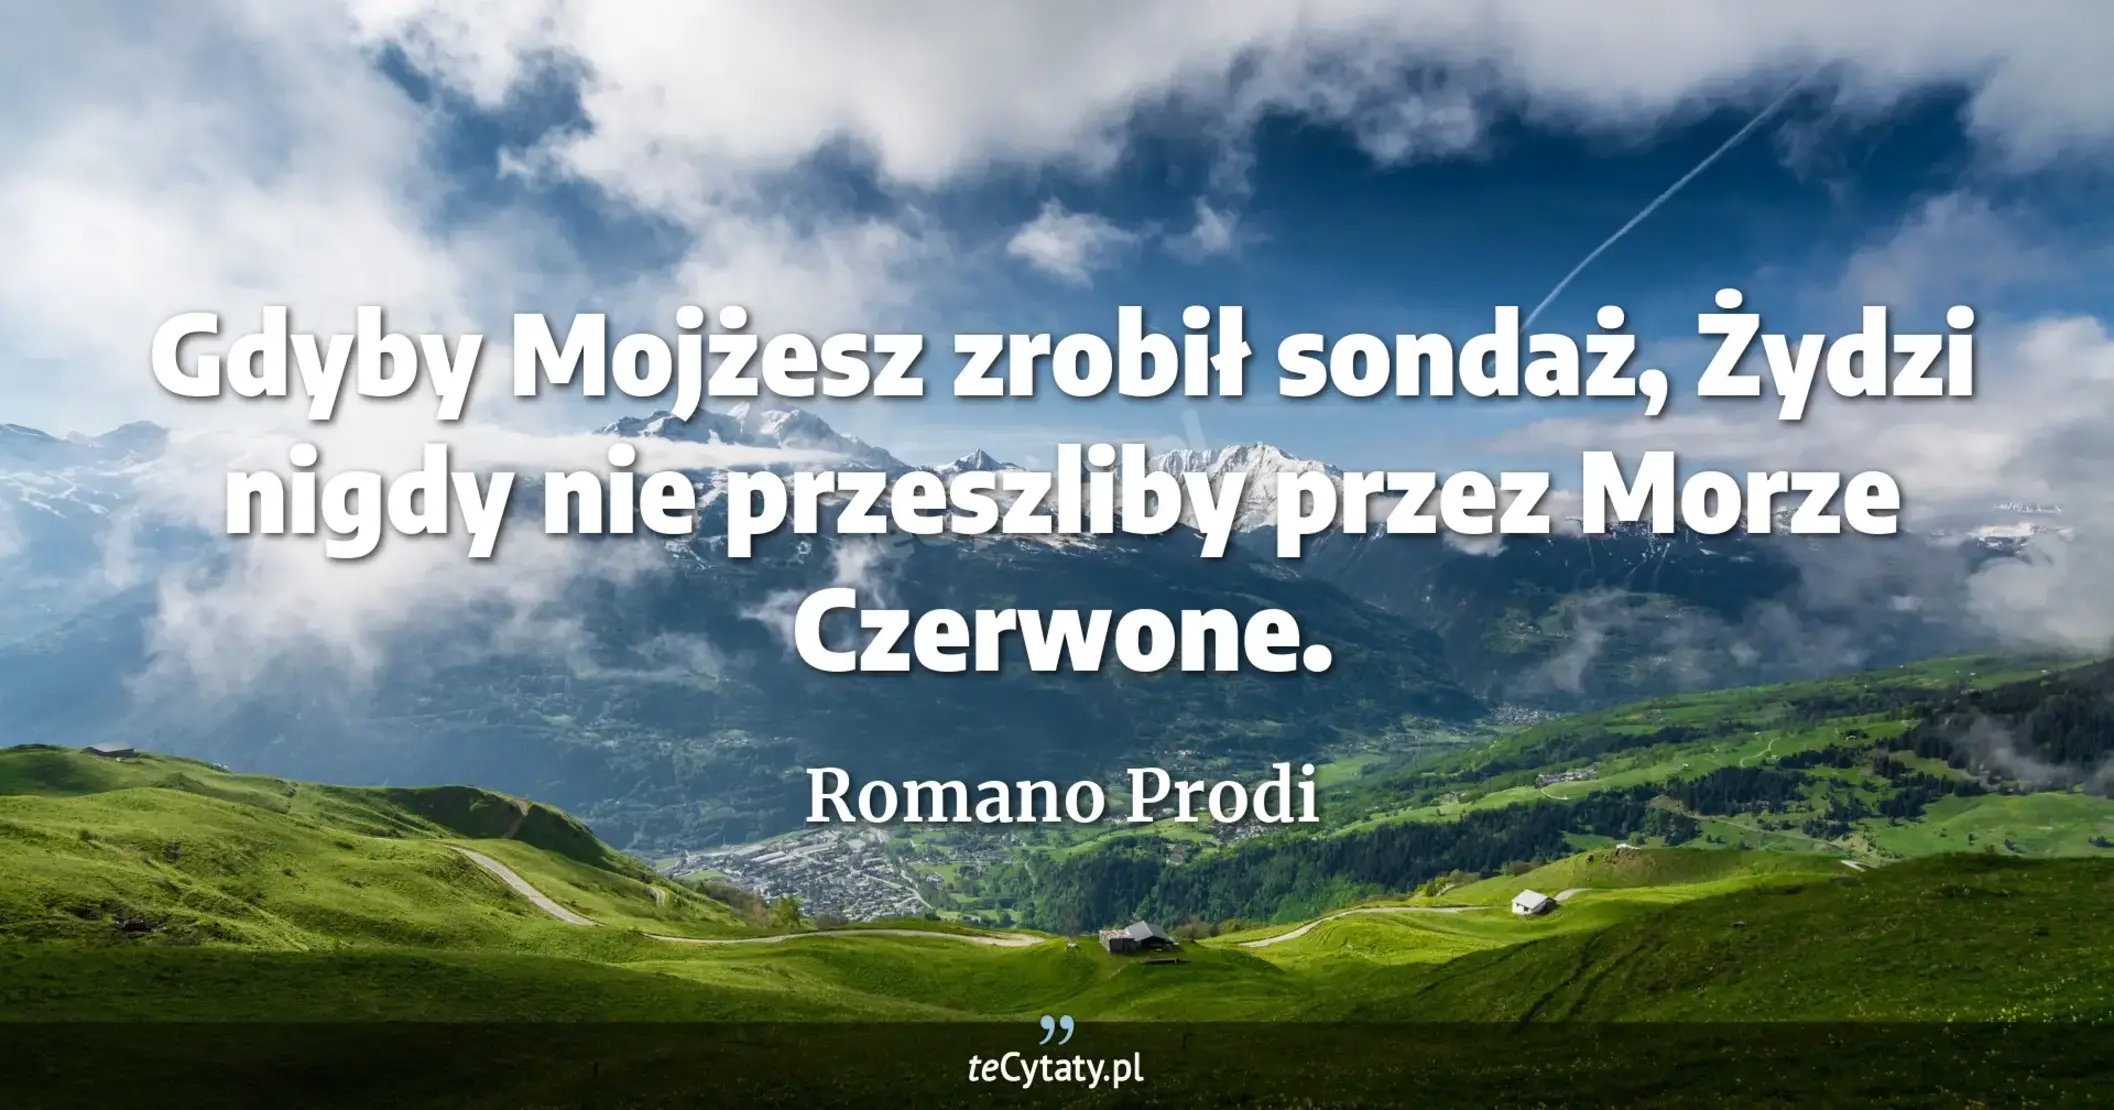 Gdyby Mojżesz zrobił sondaż, Żydzi nigdy nie przeszliby przez Morze Czerwone. - Romano Prodi